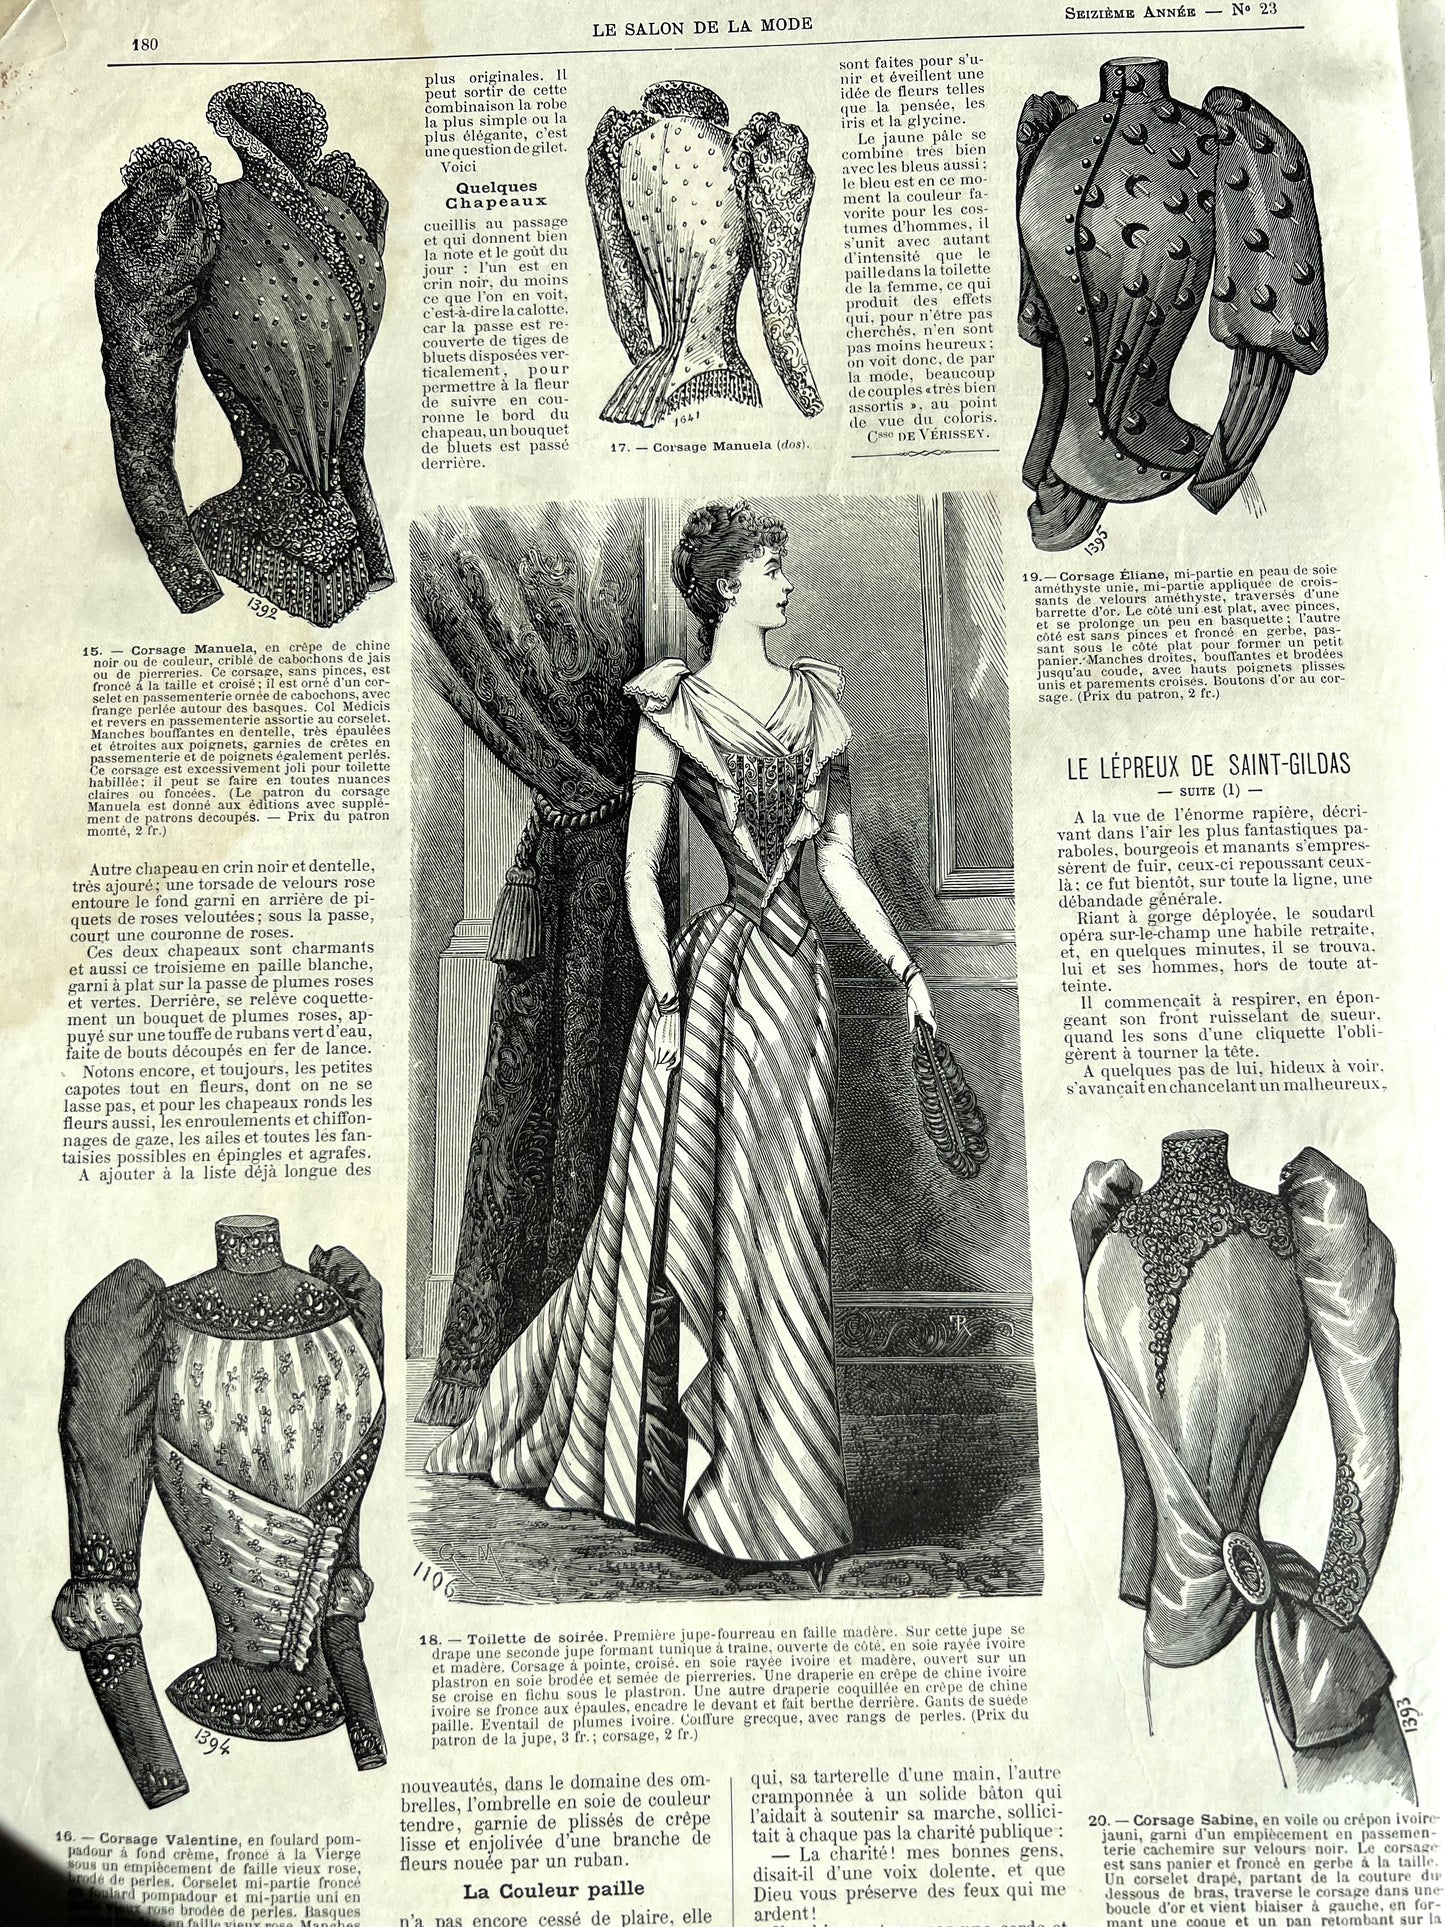 Wedding Dresses in June 1887 French Fashion Paper  Salon De La Mode